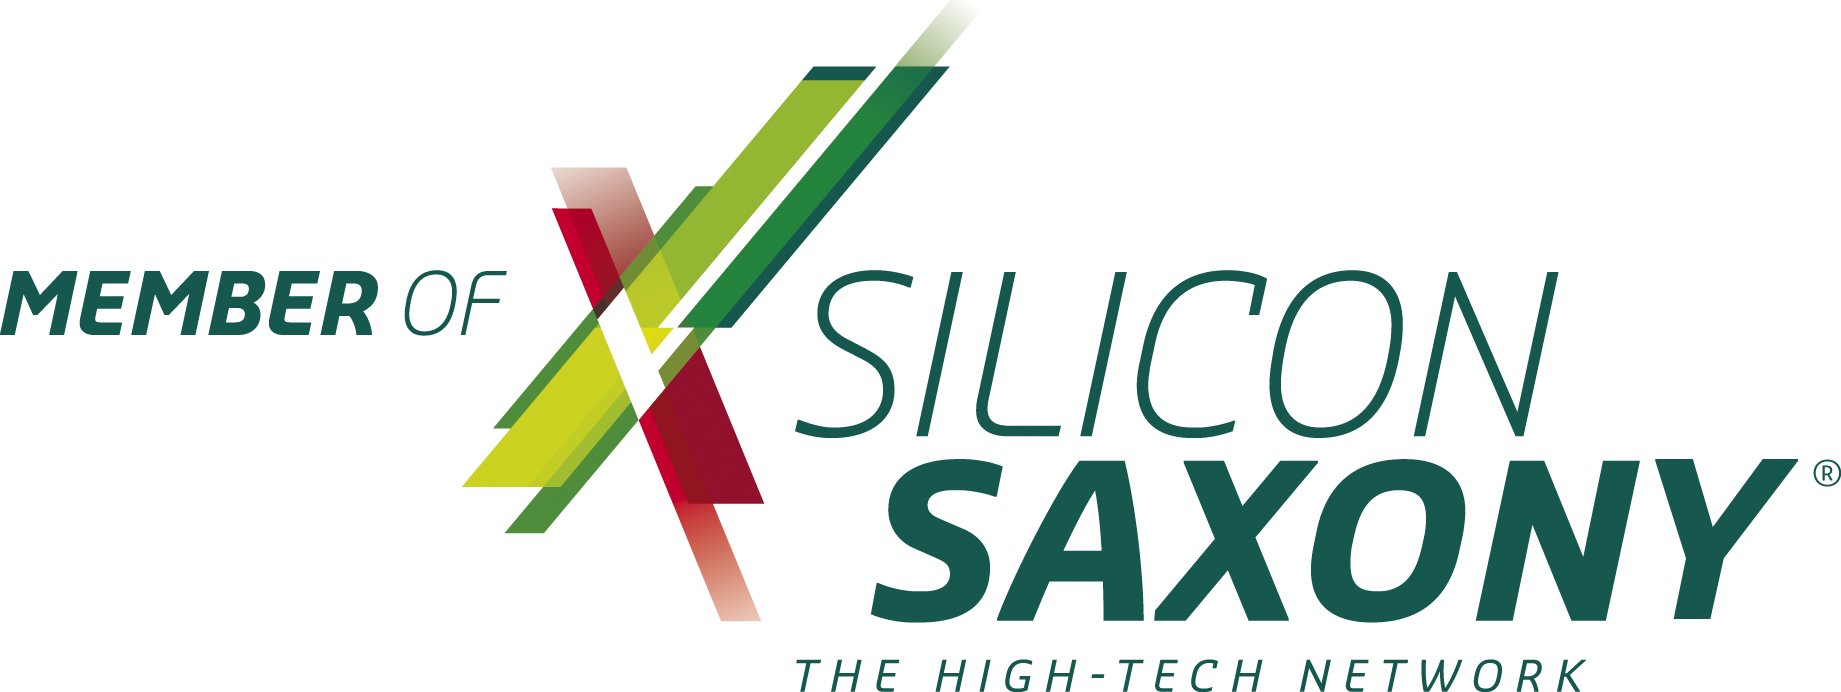 Wir sind Mitglied des Silicon Saxony Netzwerks